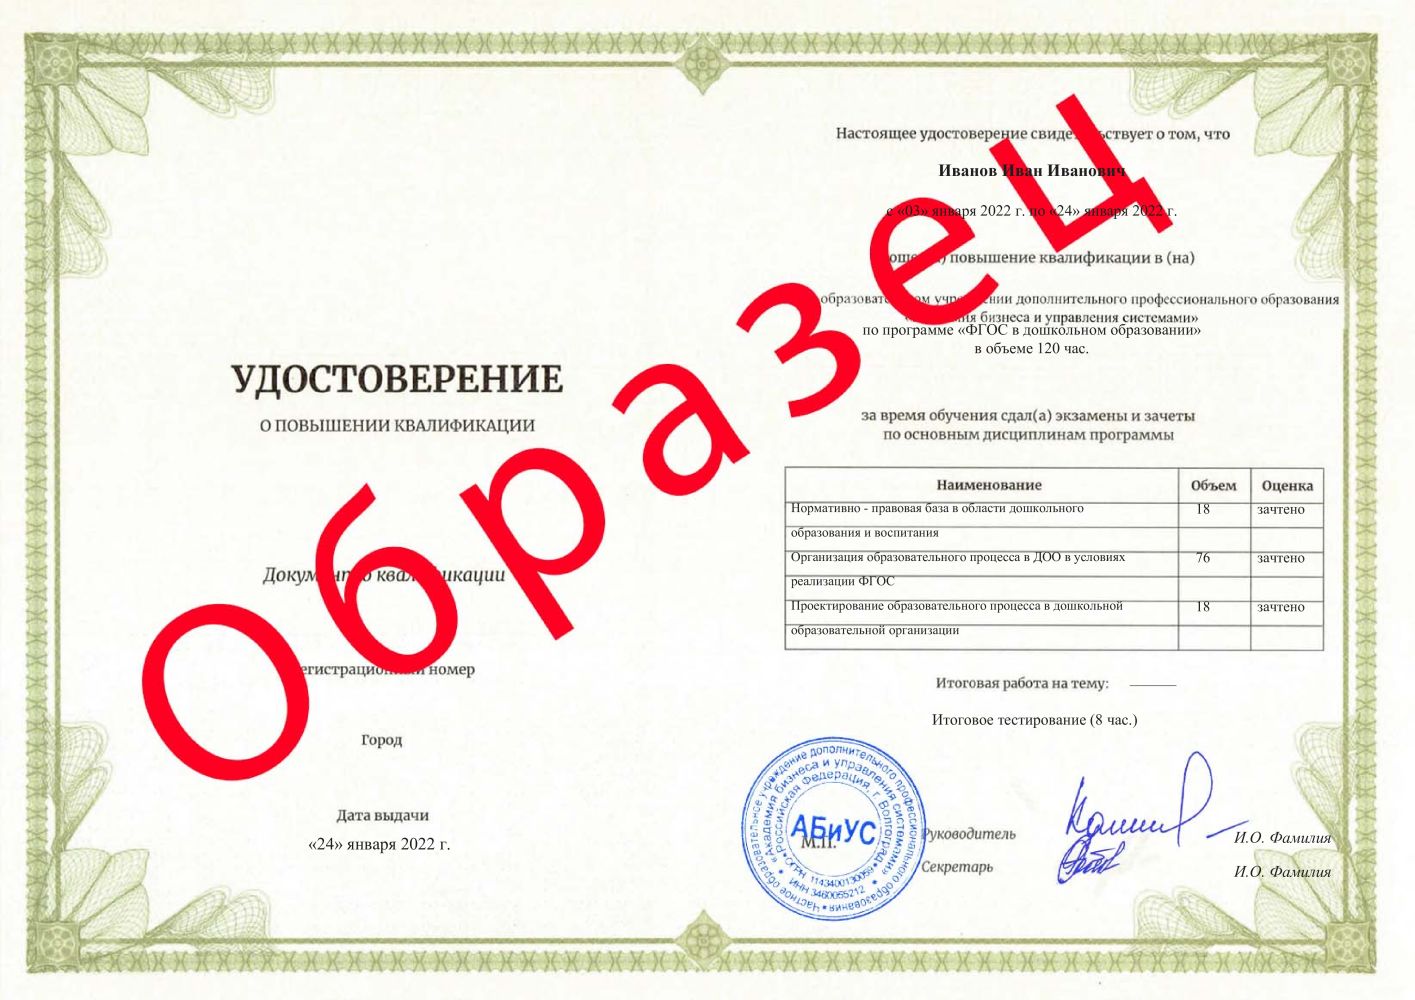 Удостоверение ФГОС в дошкольном образовании 120 часов 3467 руб.